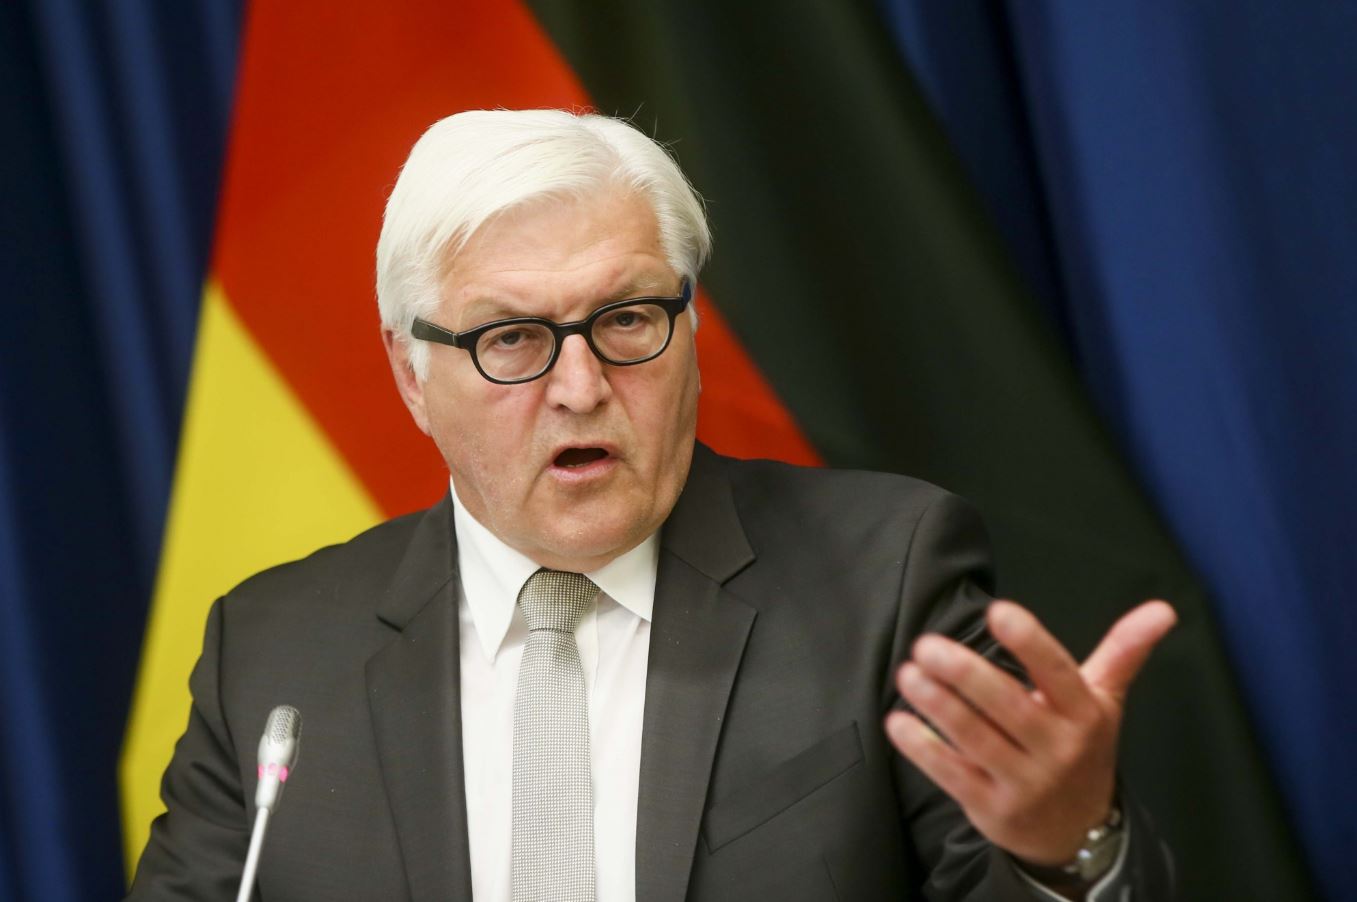 Германия рассчитывает на диалог между Украиной и РФ по событиям в Крыму, - глава МИД ФРГ Штайнмайер